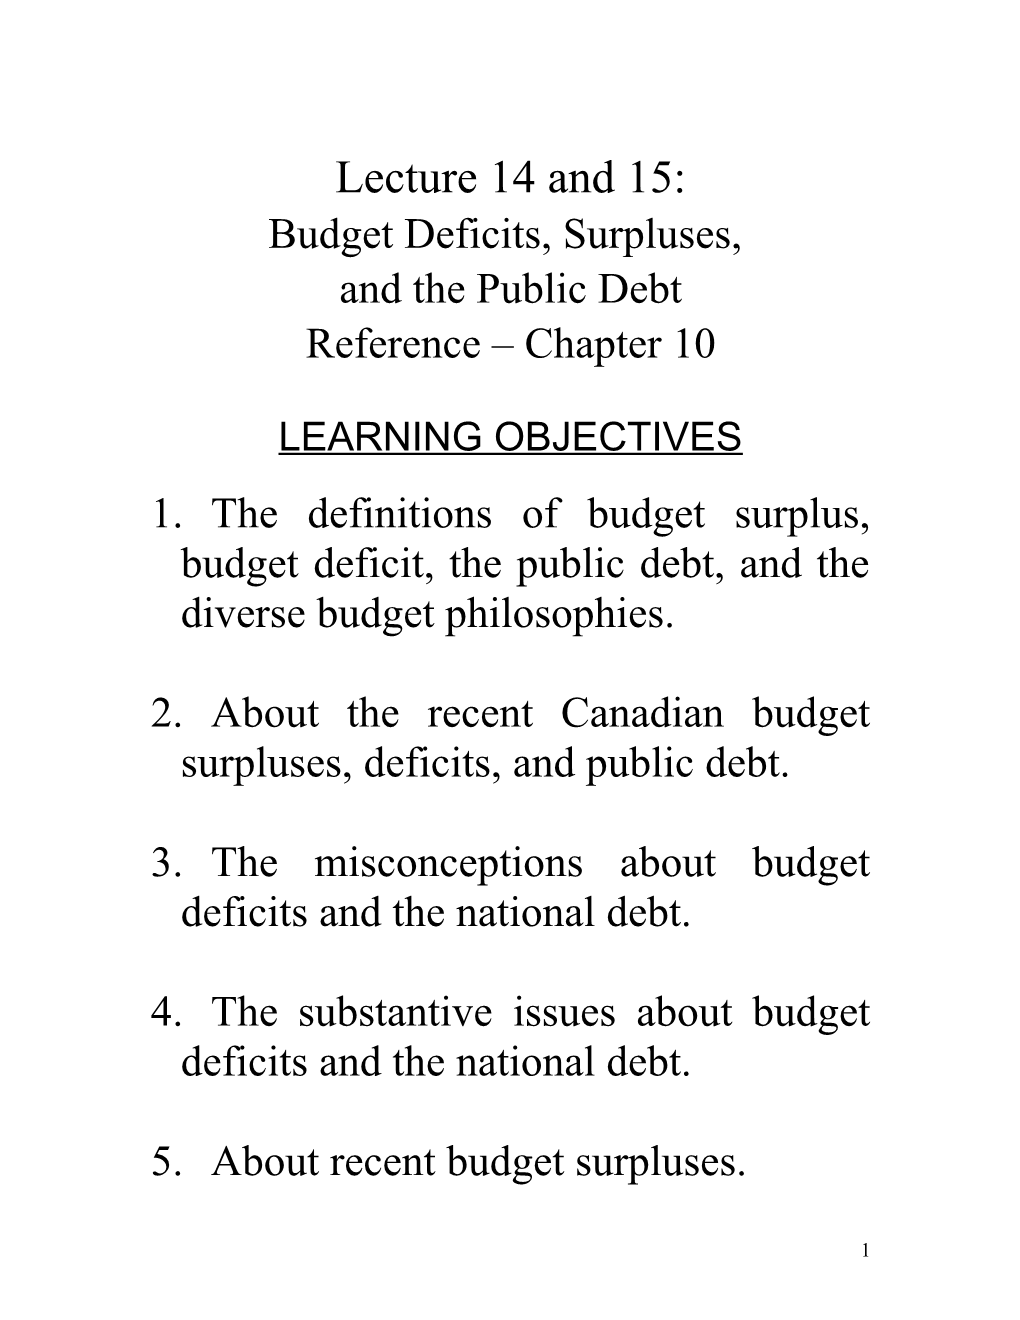 Budget Deficits, Surpluses